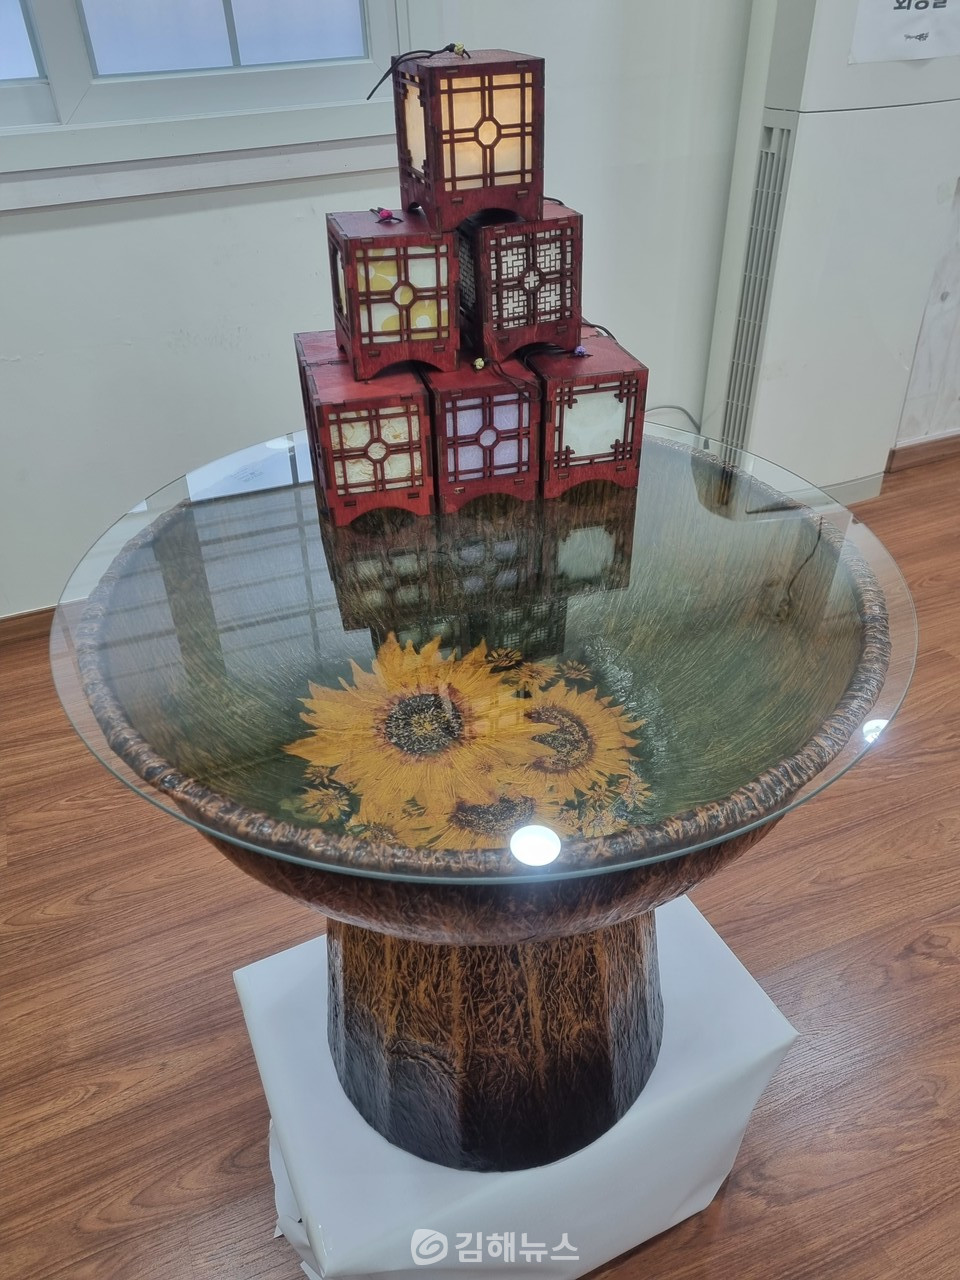 한지공예품 '탁자'.그 위에 올려져 있는 것은 '한지등(燈)'.